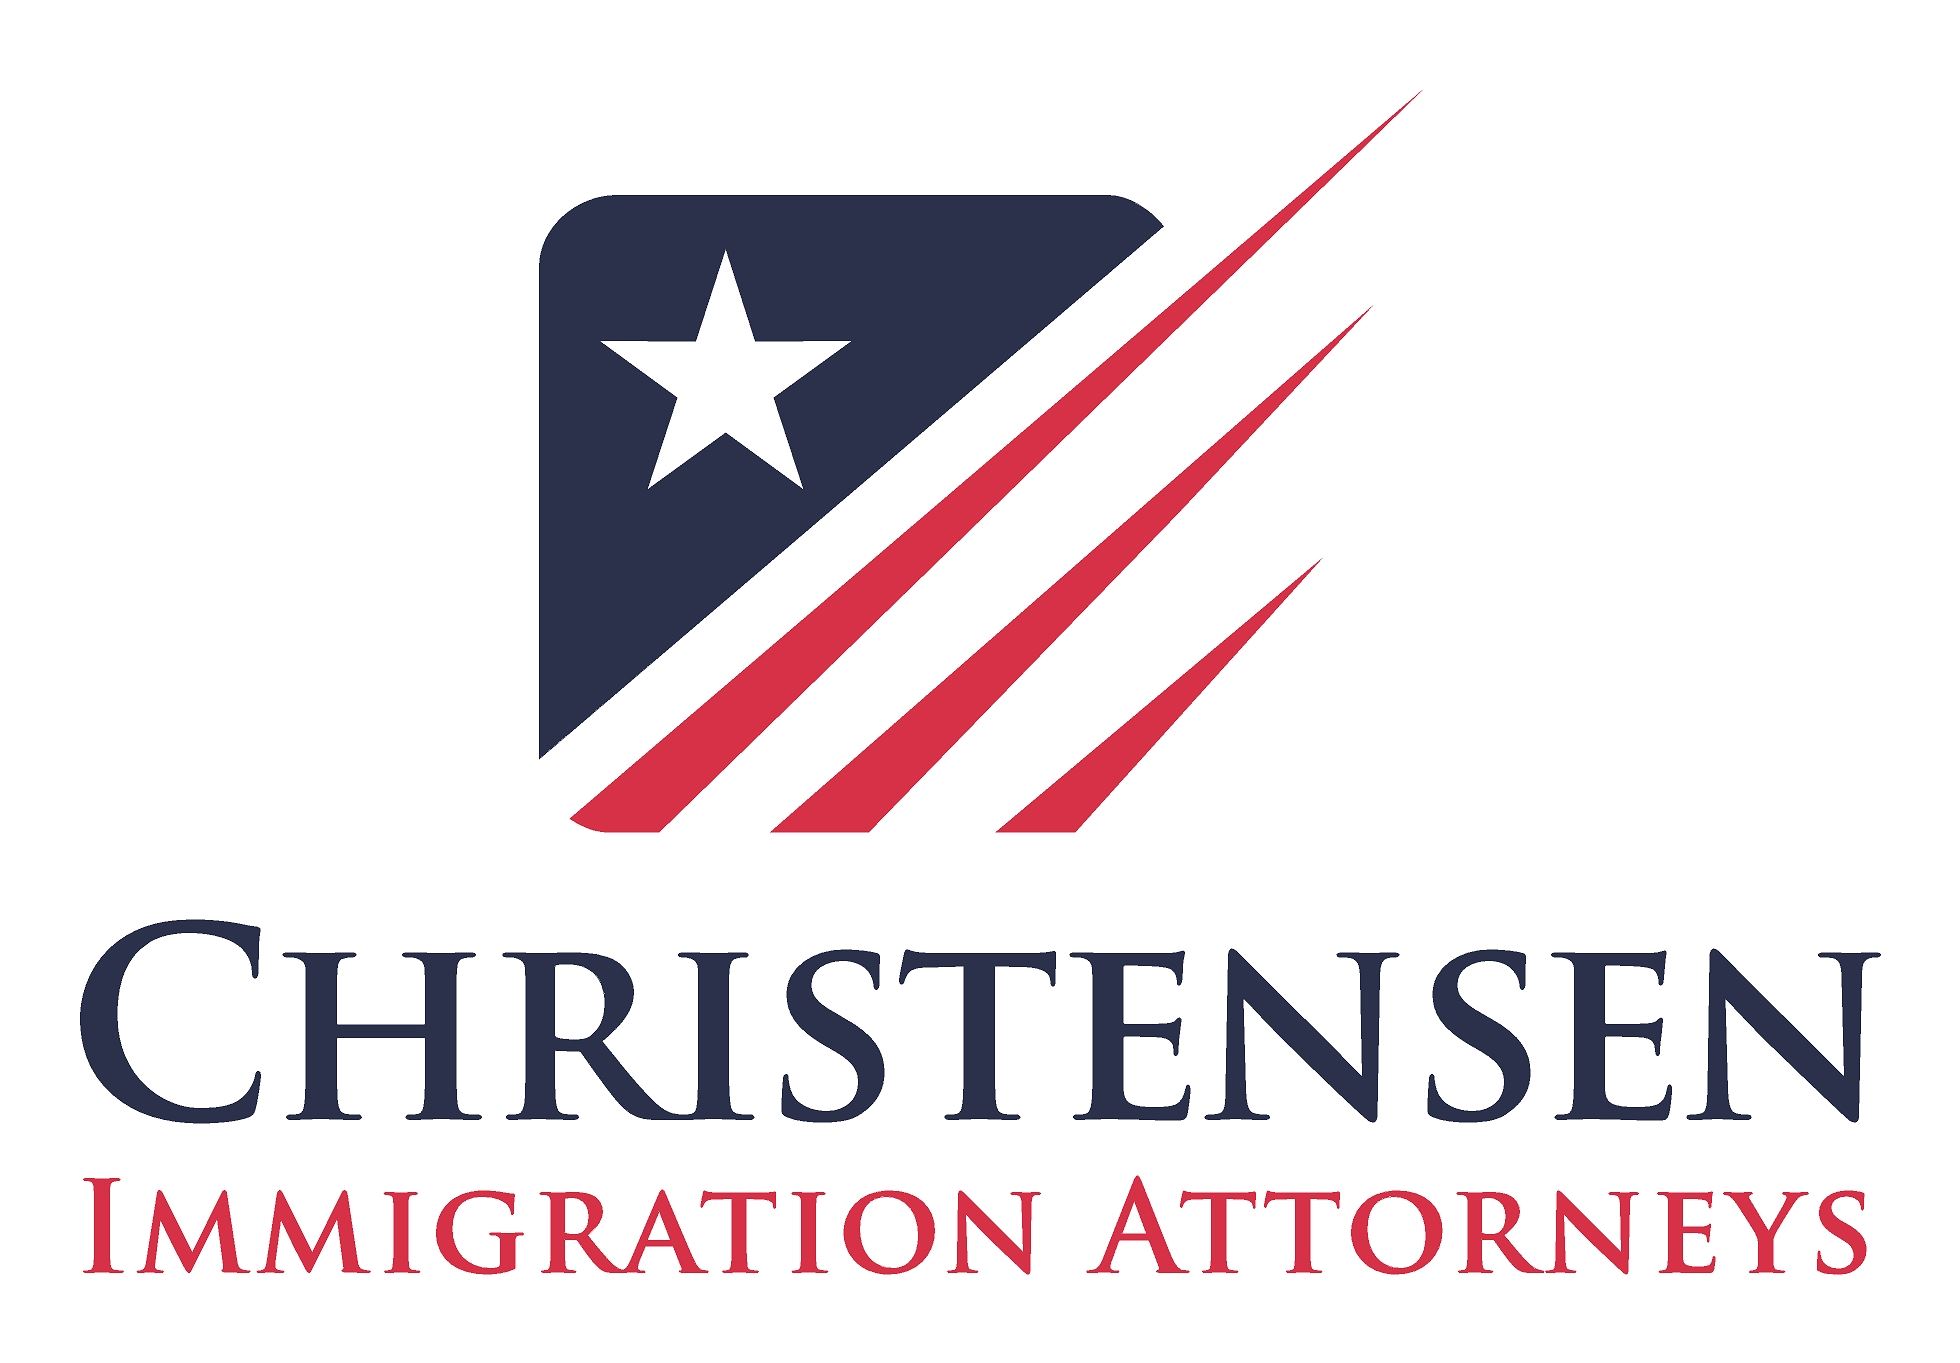 Christensen Immigration Attorneys